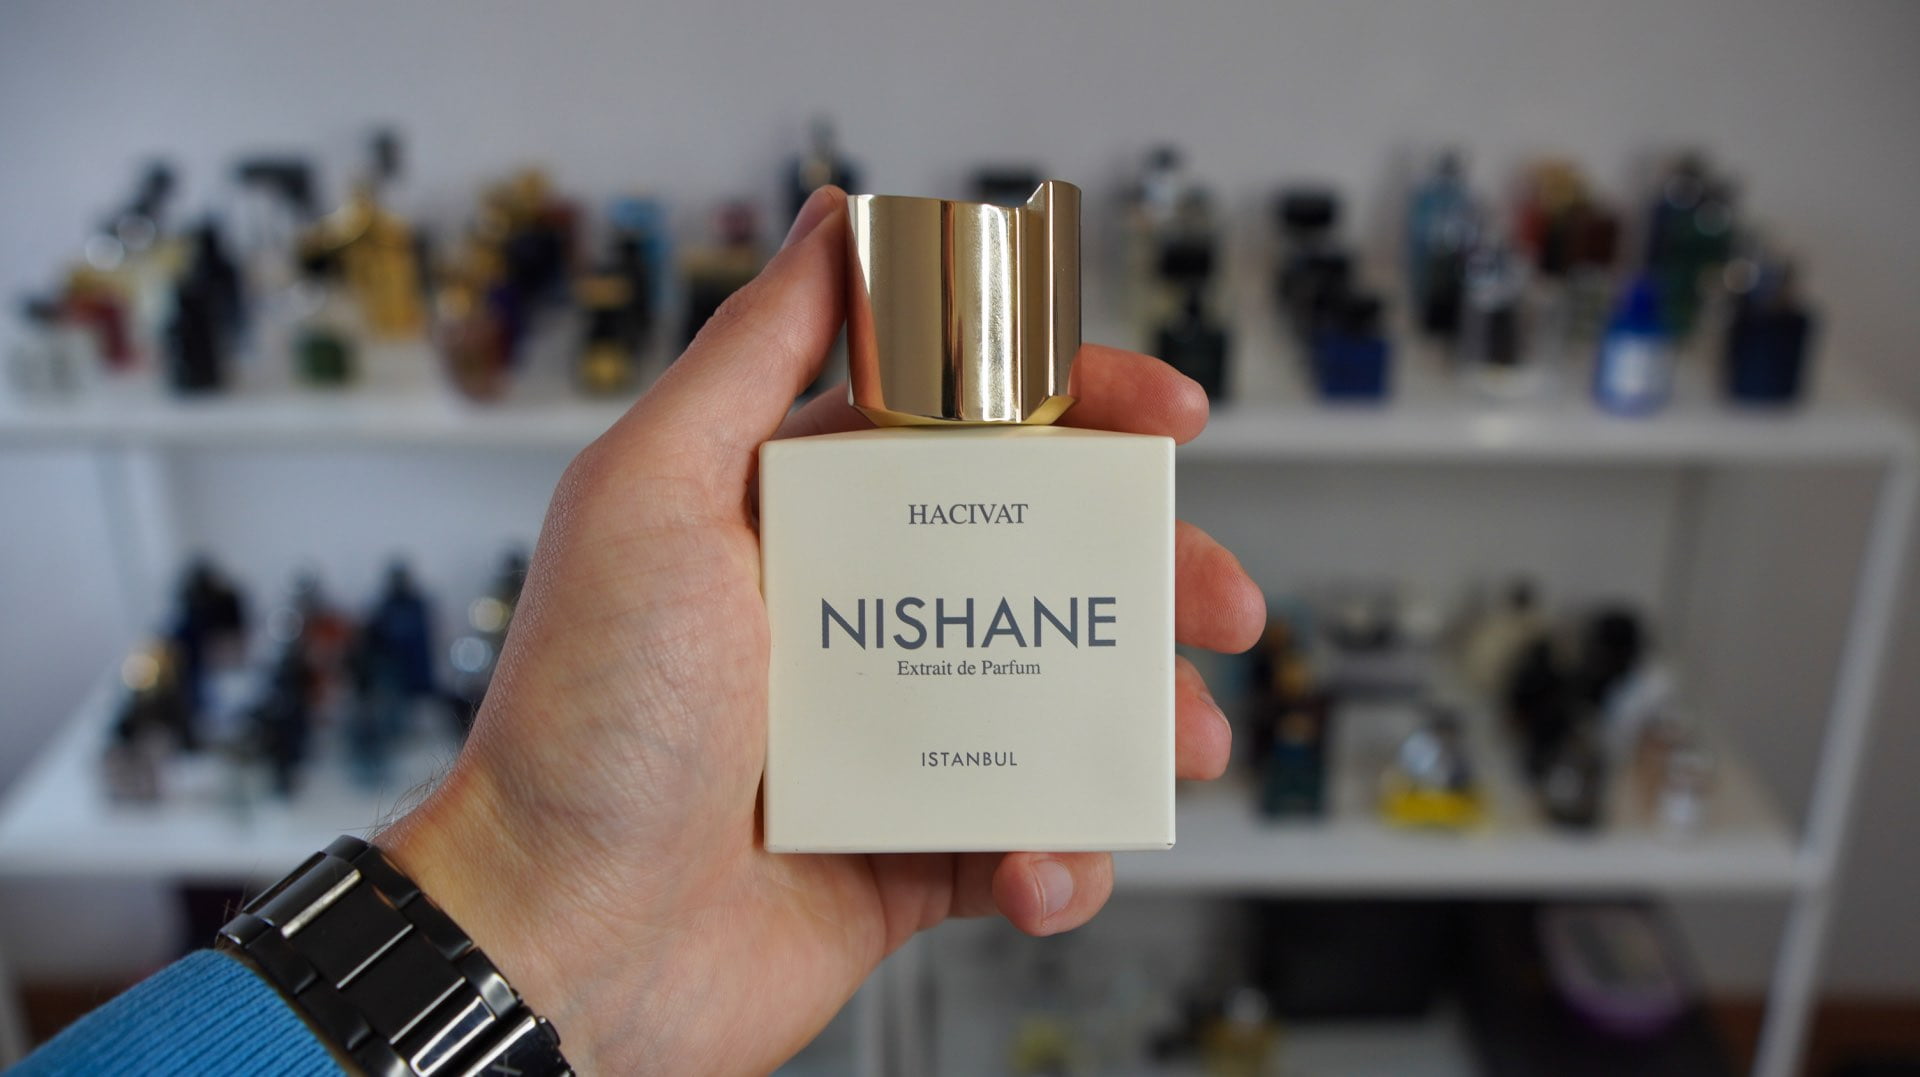 NishaneはCreed Aventusとよく比較されるが、香りのプロファイルは全く異なる。